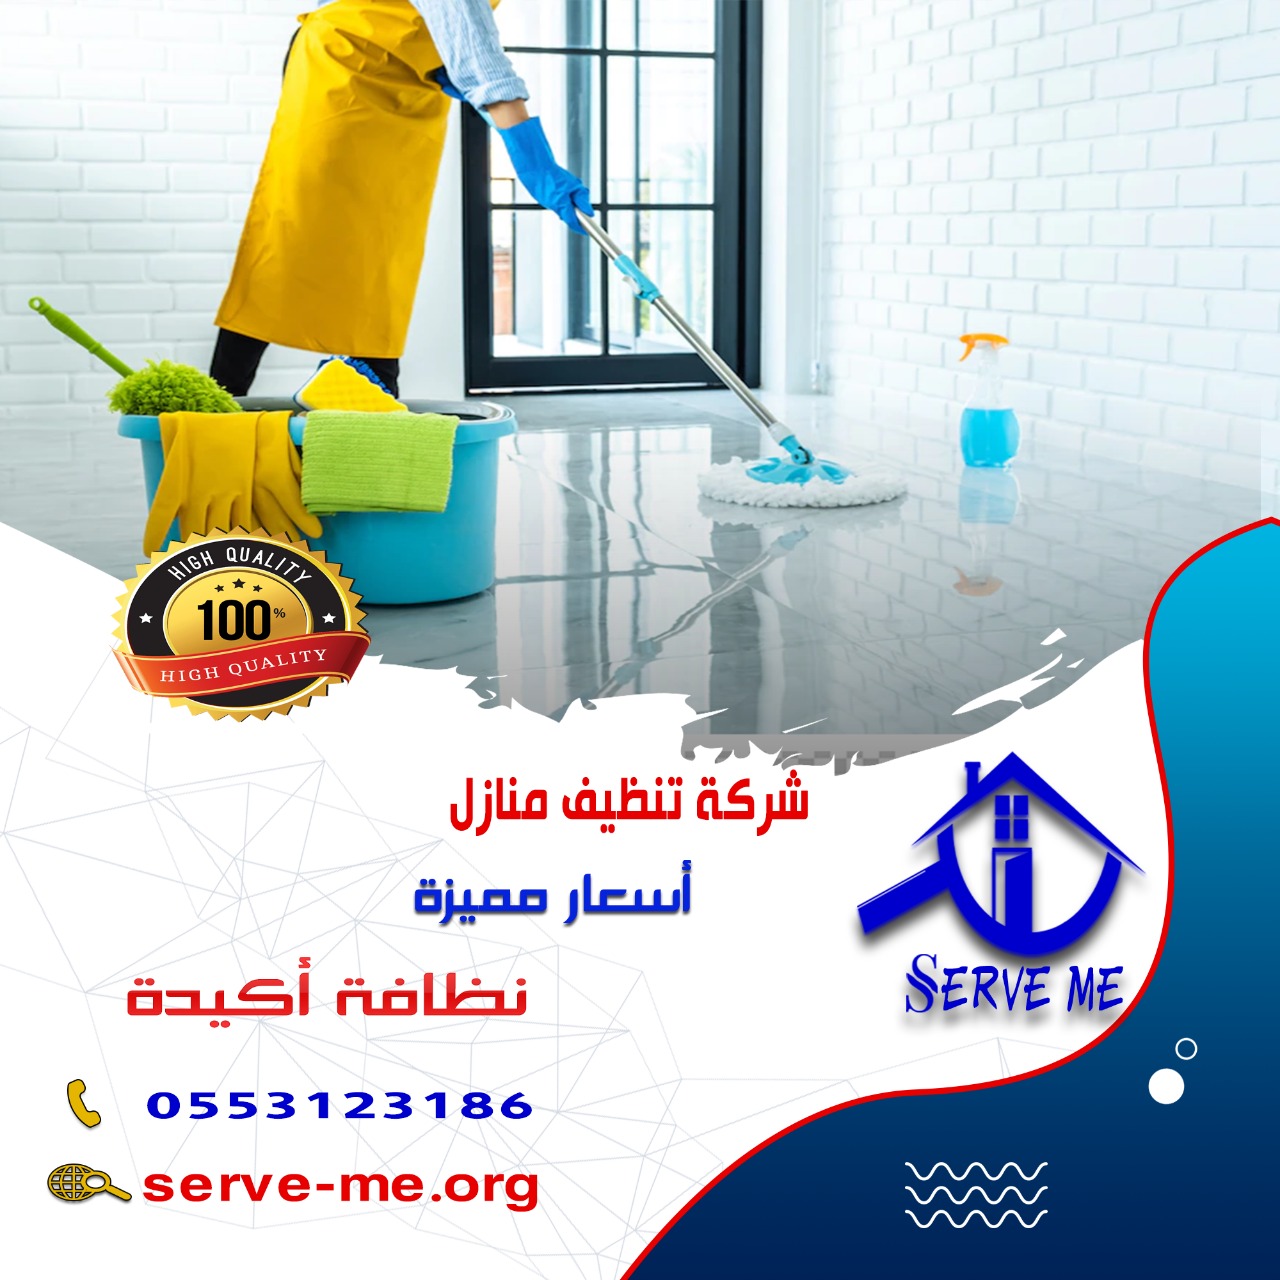 شركة تنظيف منازل بالباحة   | 0553123186